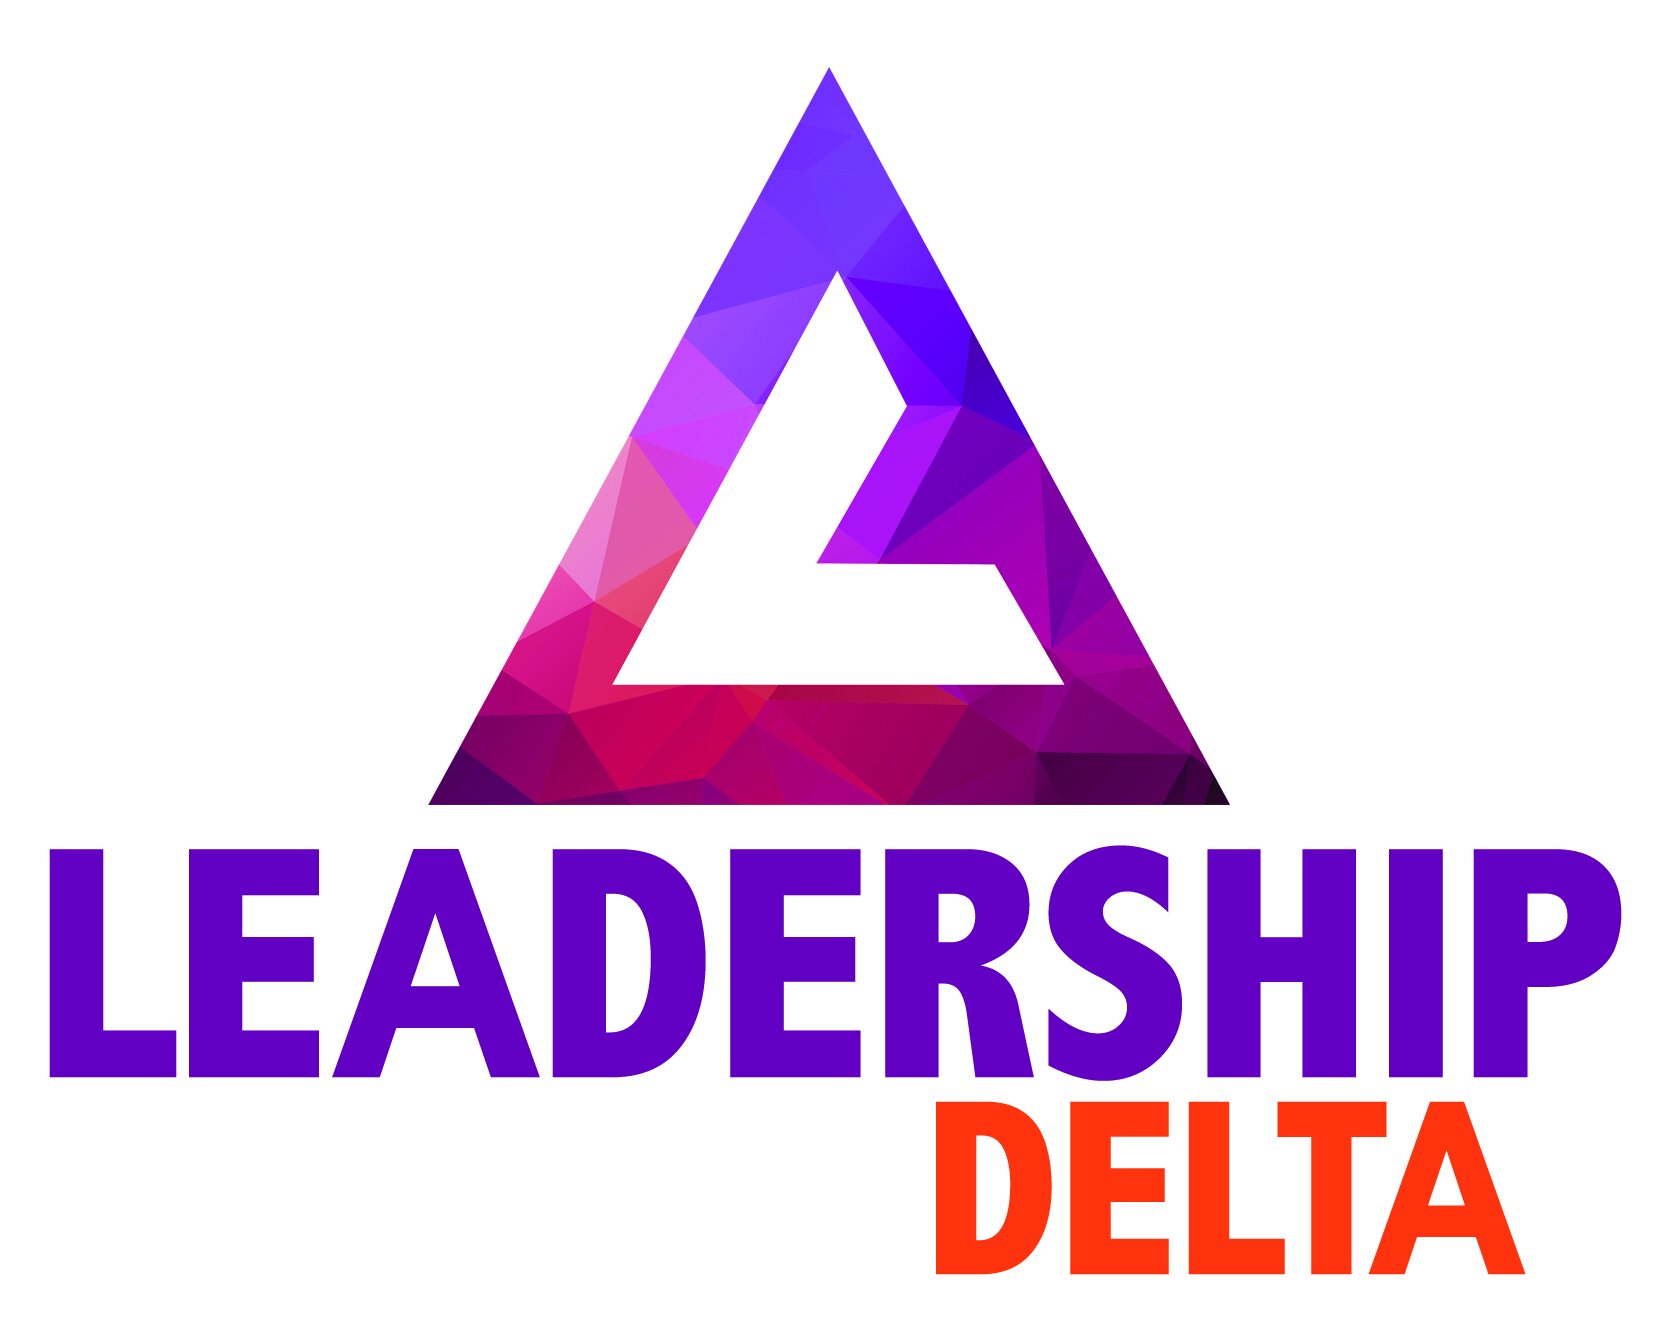 Leadership Delta